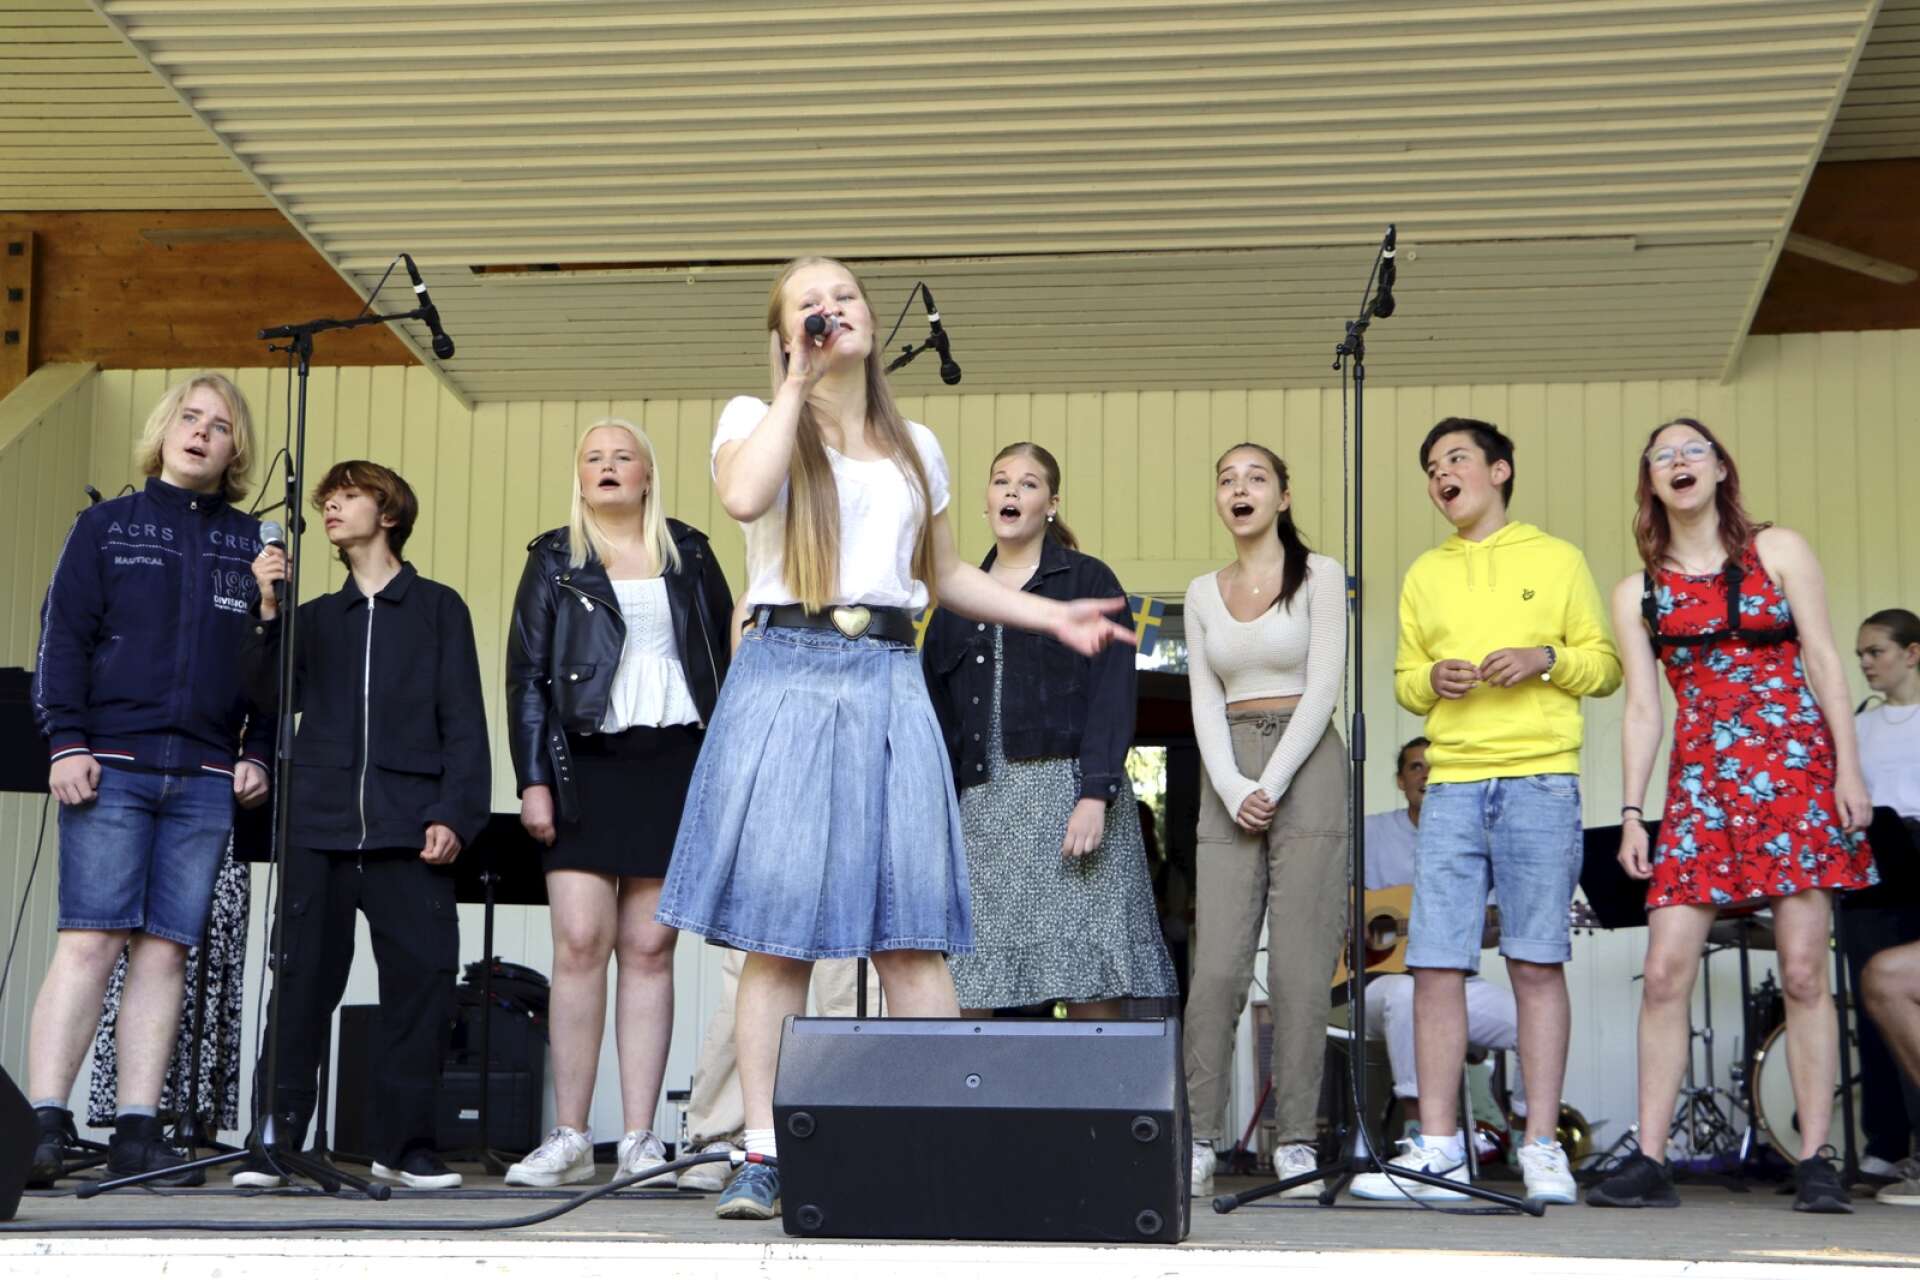 Kulturskolans sångare med Malva Sjöberg Harling i spetsen som tillsammans sjöng Spelar för livet.